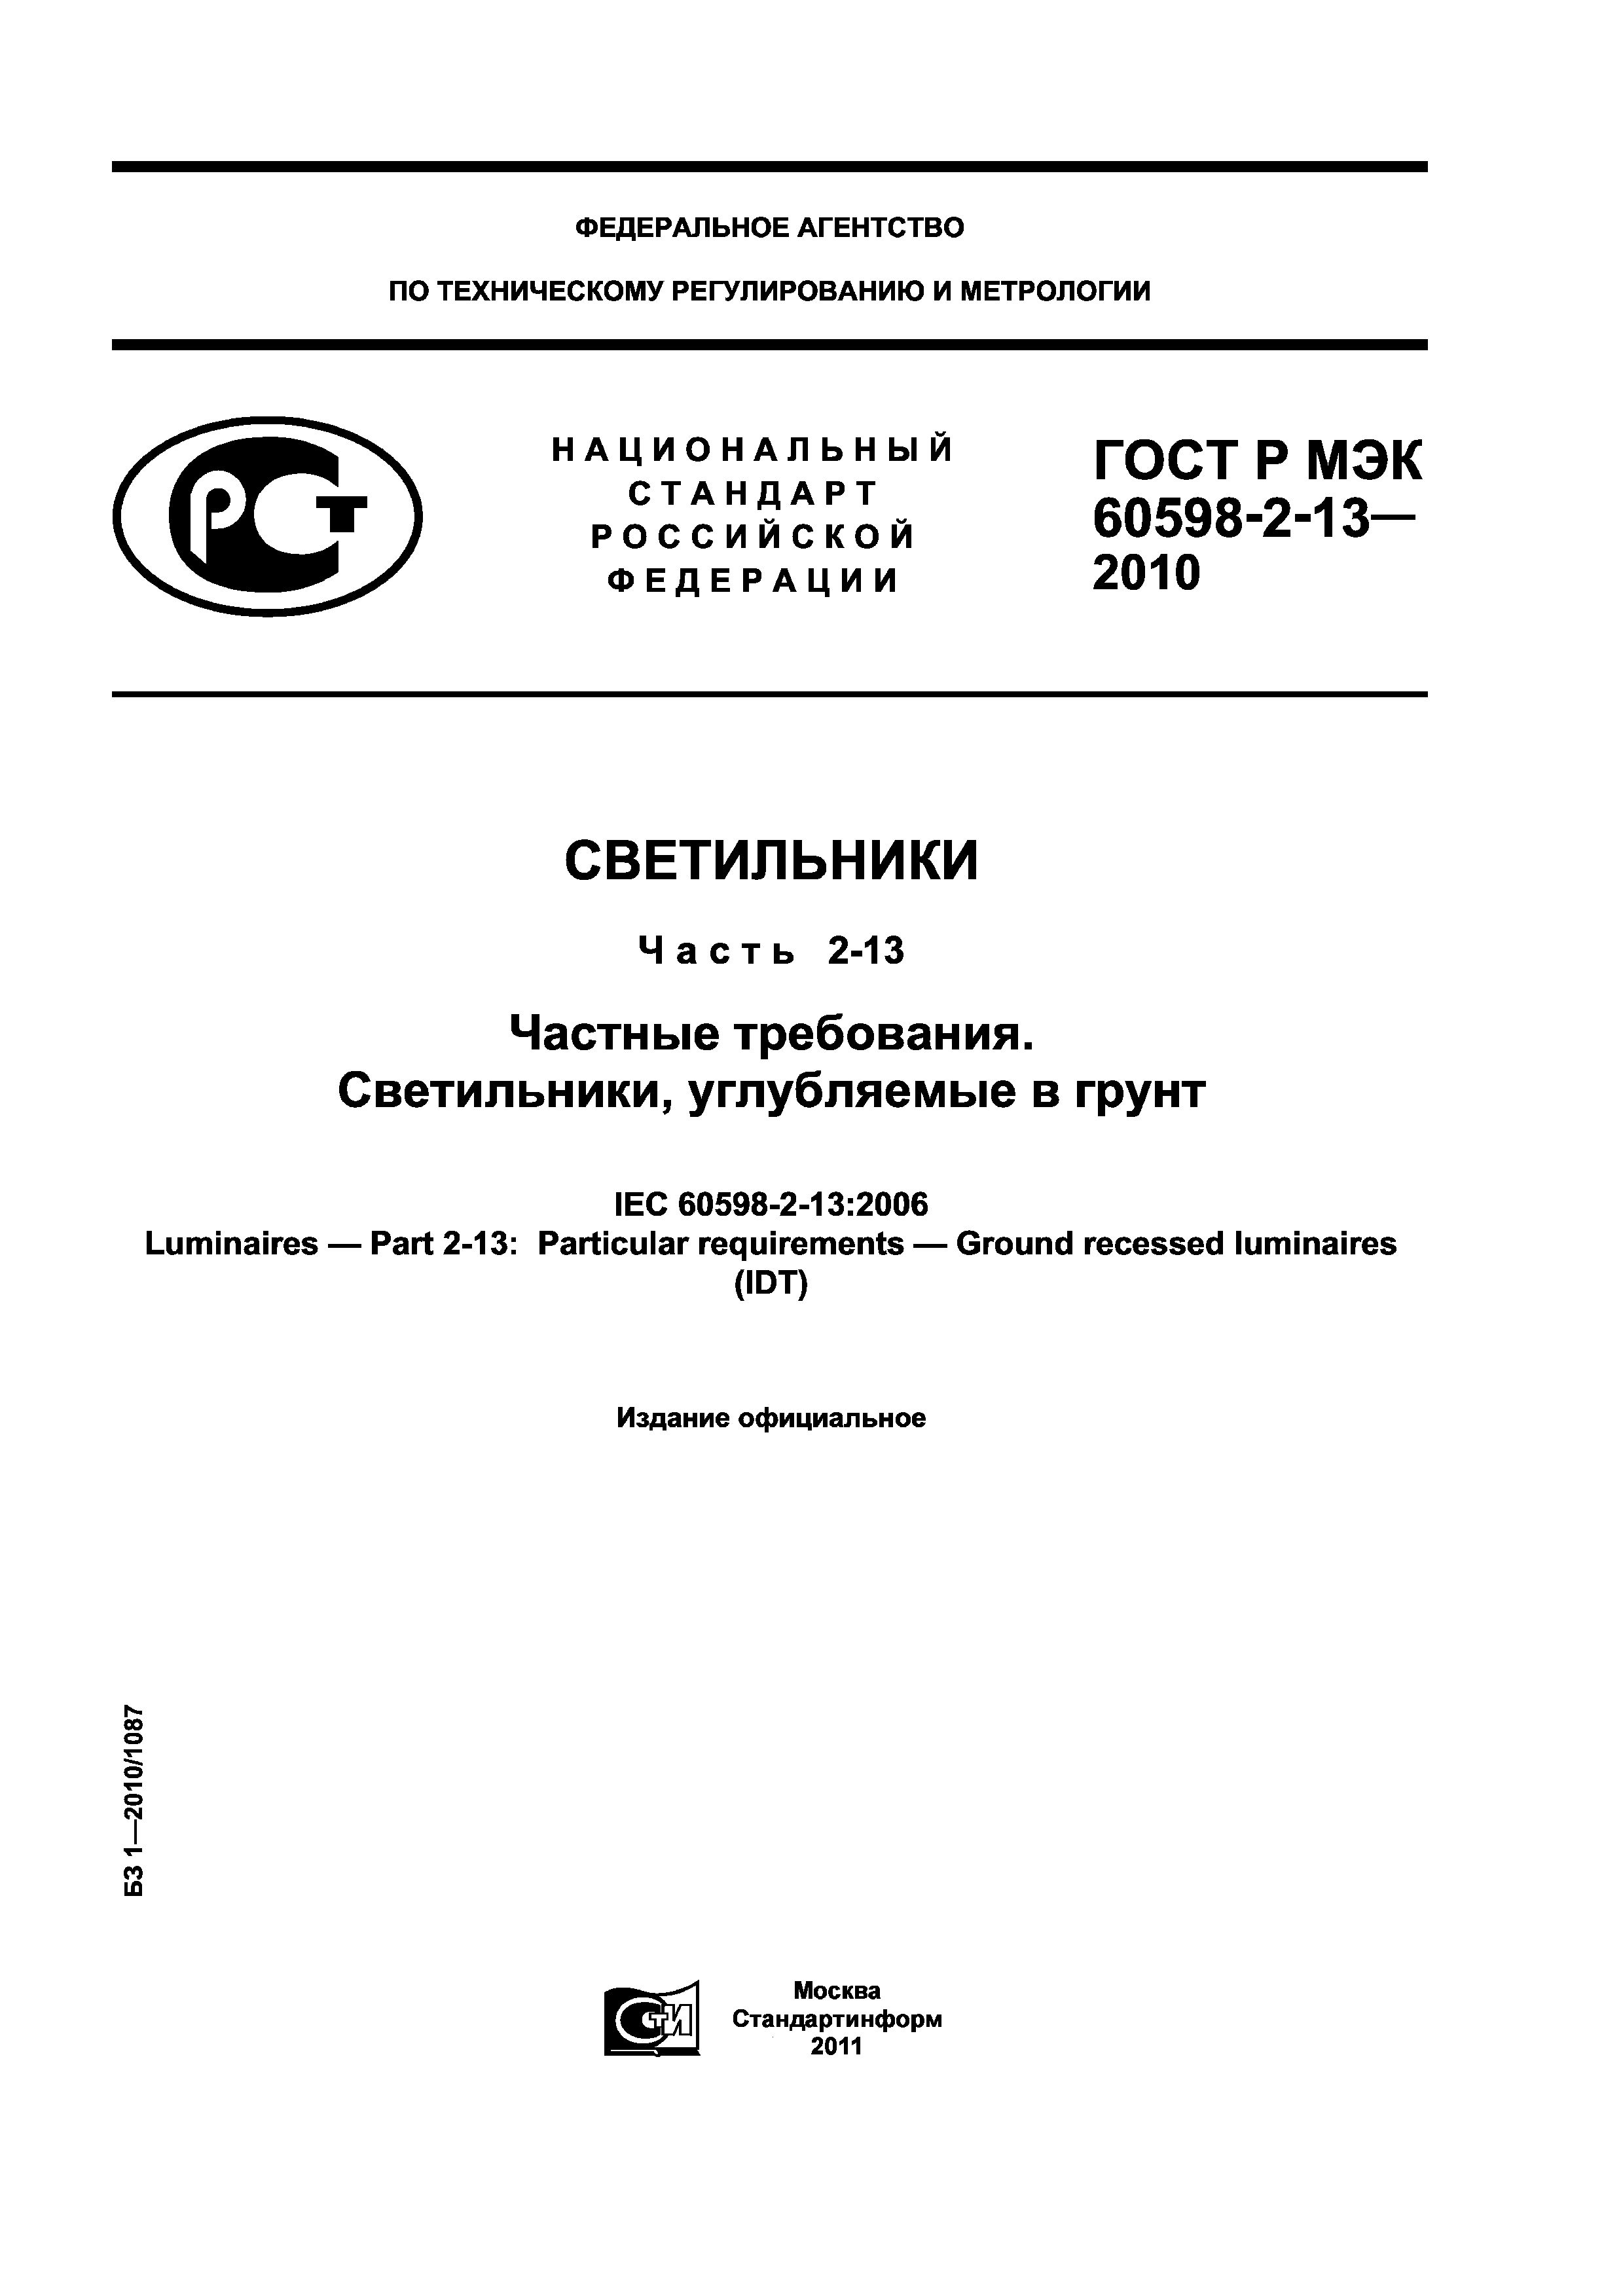 ГОСТ Р МЭК 60598-2-13-2010